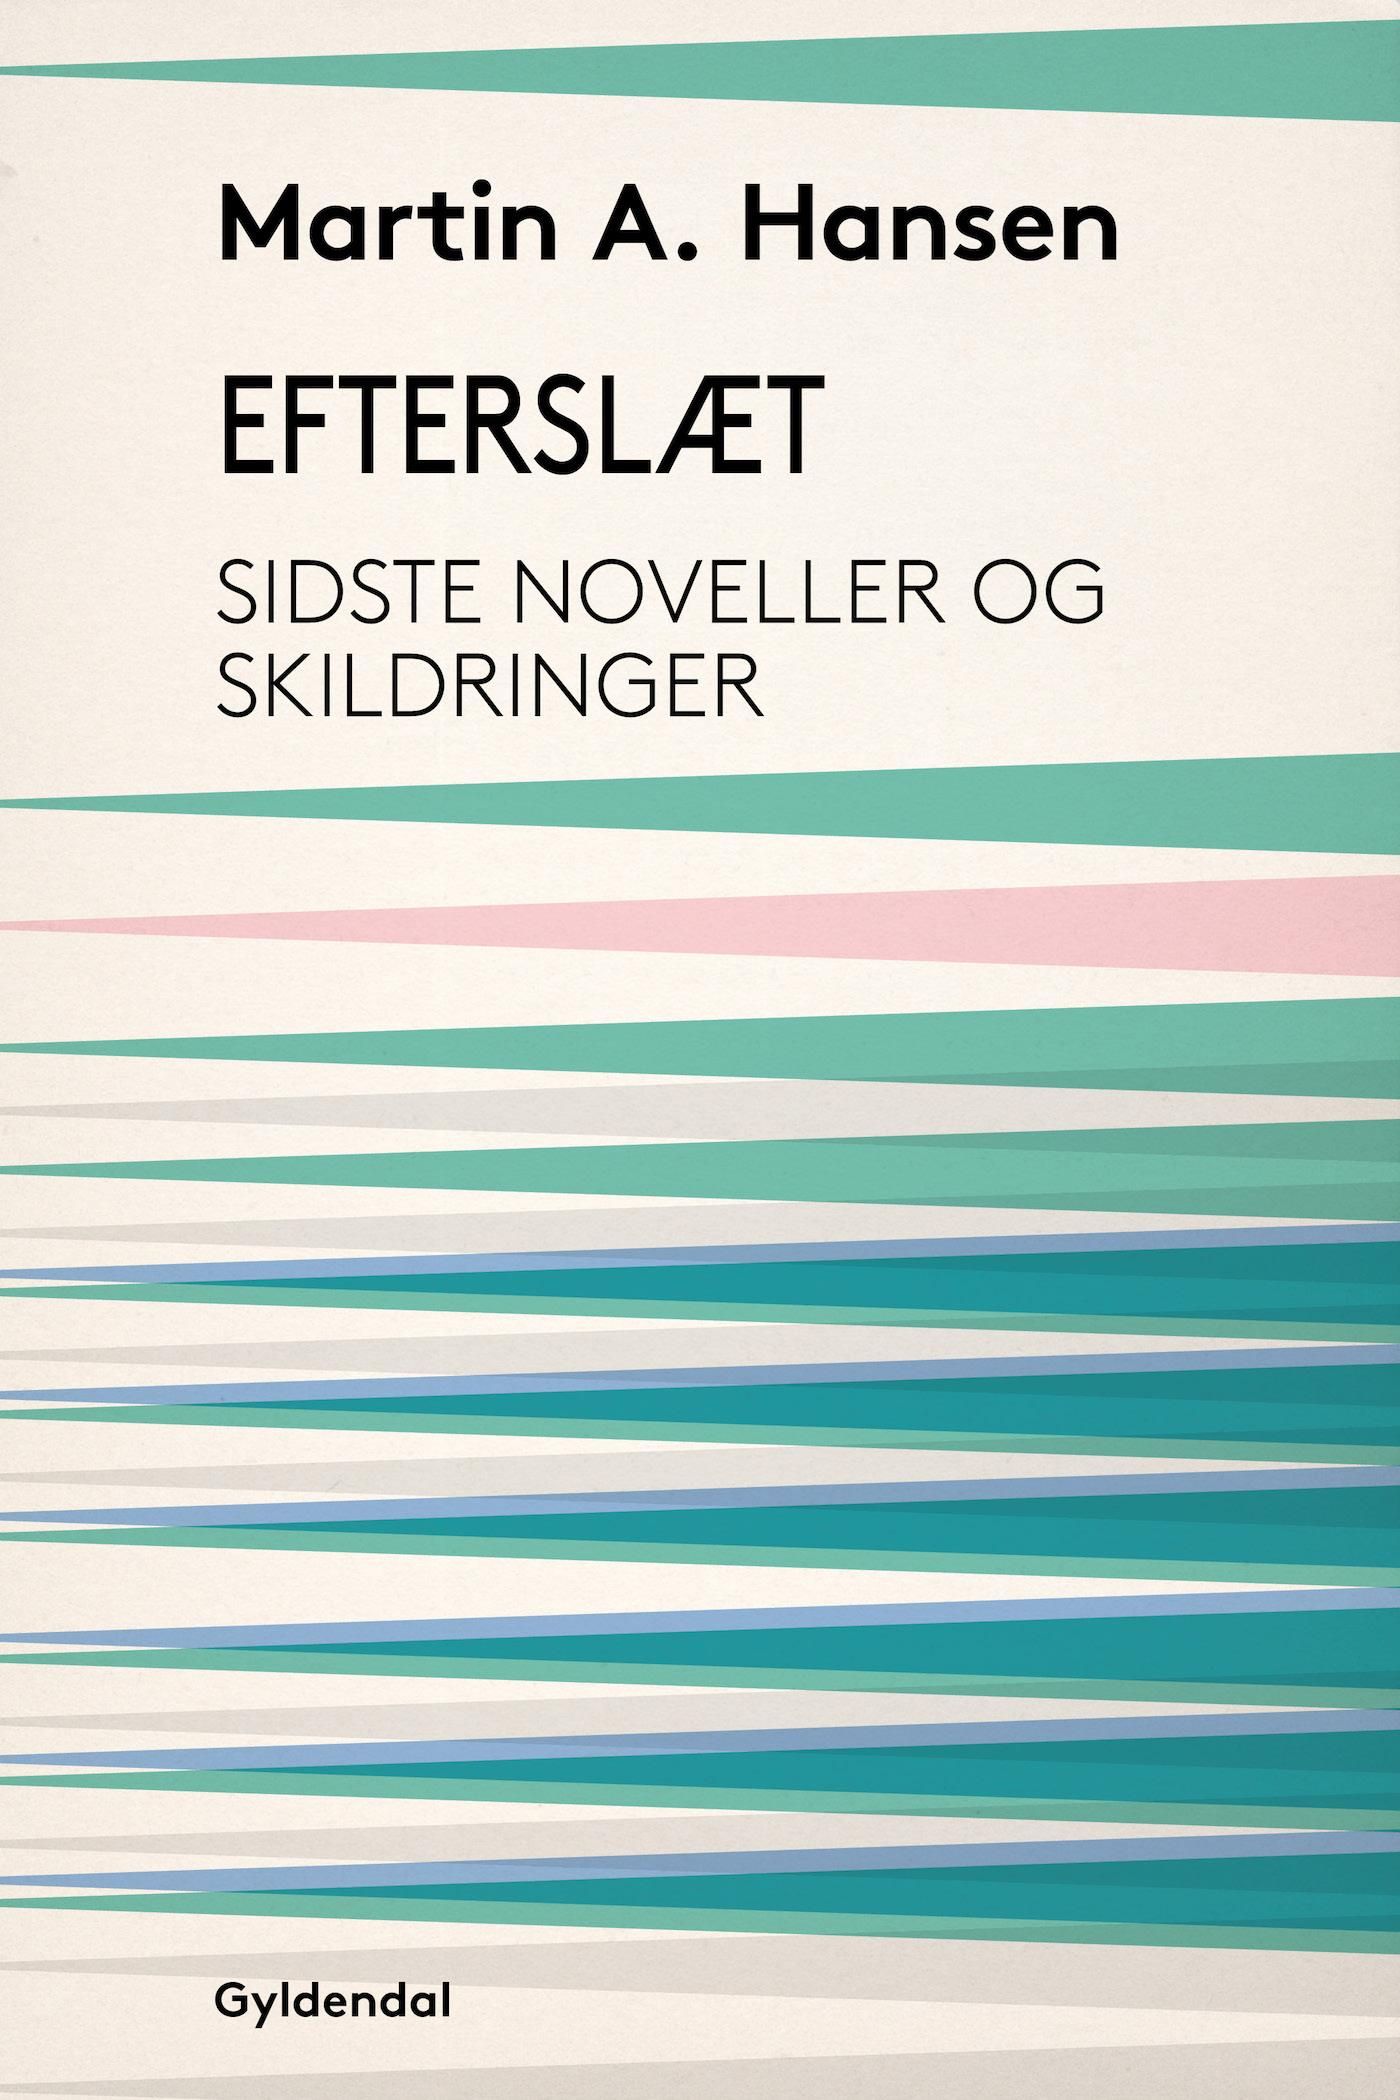 Efterslæt, e-bok av Martin A. Hansen